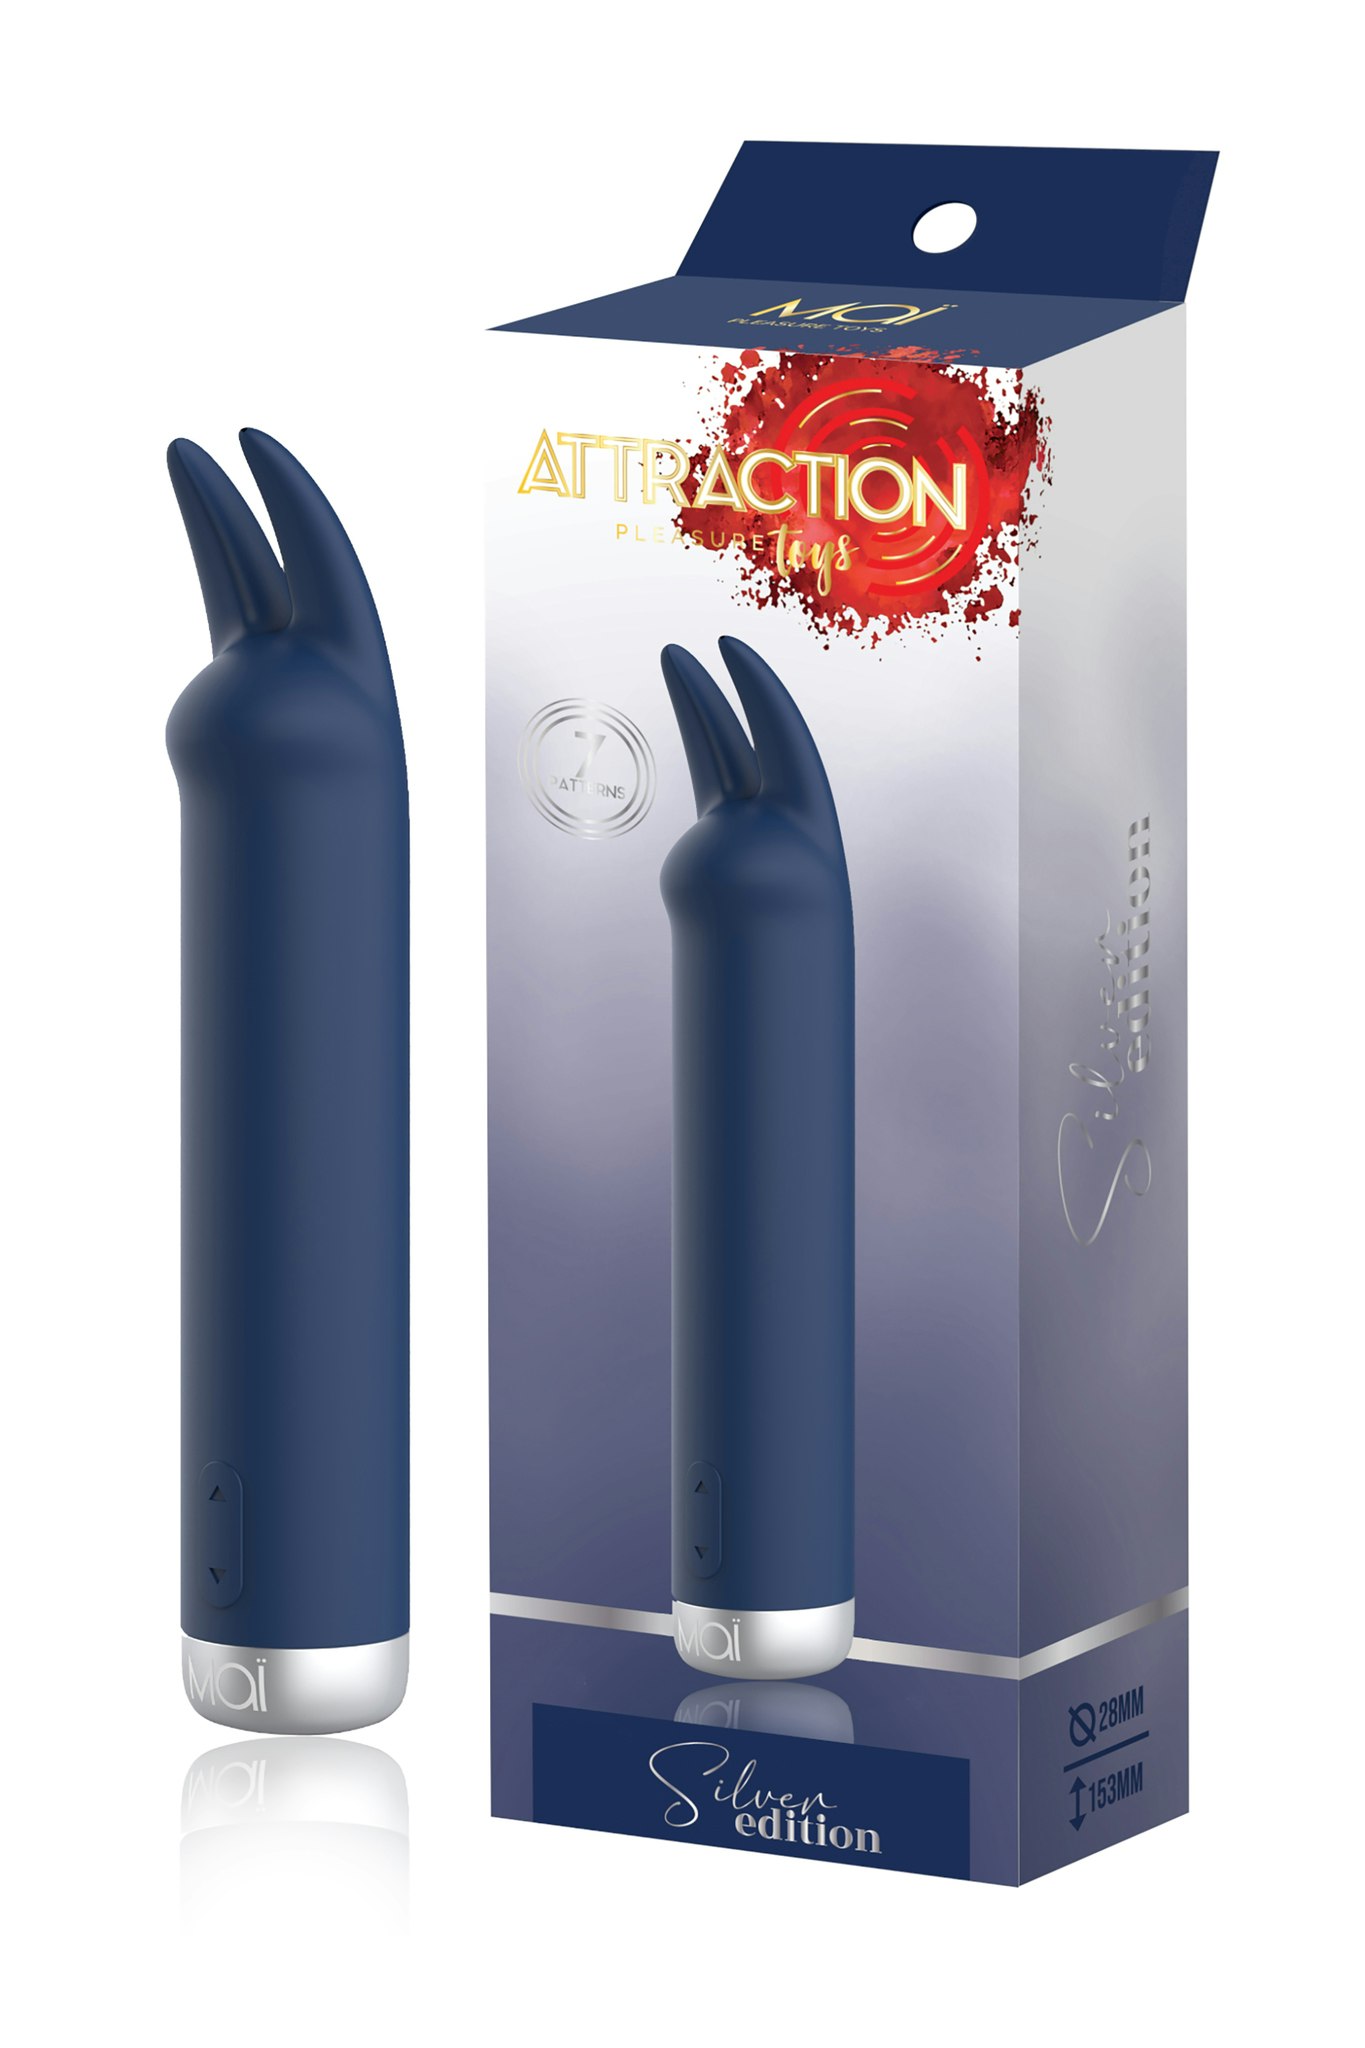 Mai - Stimulator Attraction Bunny Silver Edition